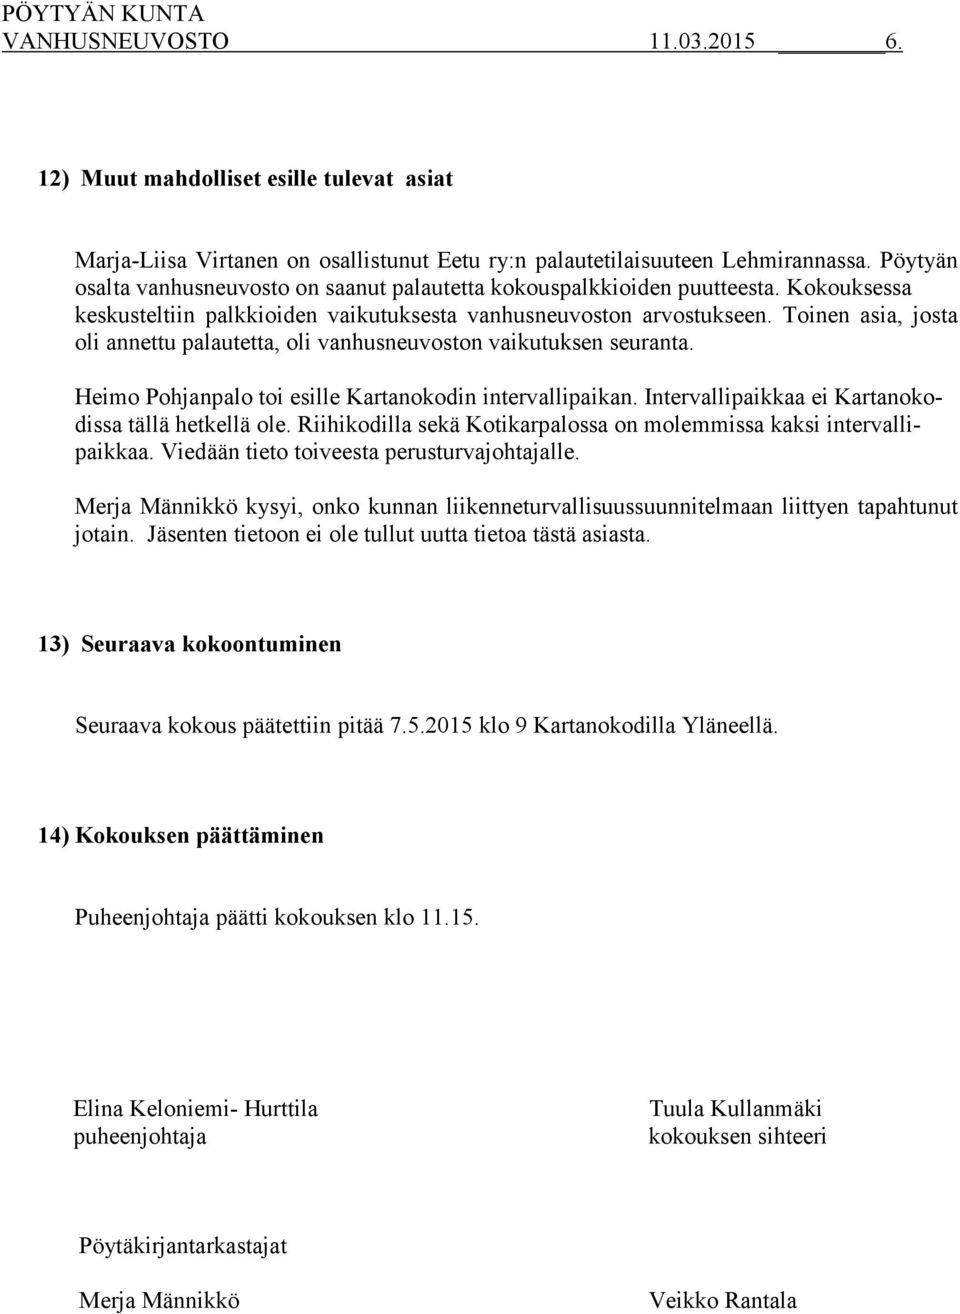 Toinen asia, josta oli annettu palautetta, oli vanhusneuvoston vaikutuksen seuranta. Heimo Pohjanpalo toi esille Kartanokodin intervallipaikan. Intervallipaikkaa ei Kartanokodissa tällä hetkellä ole.